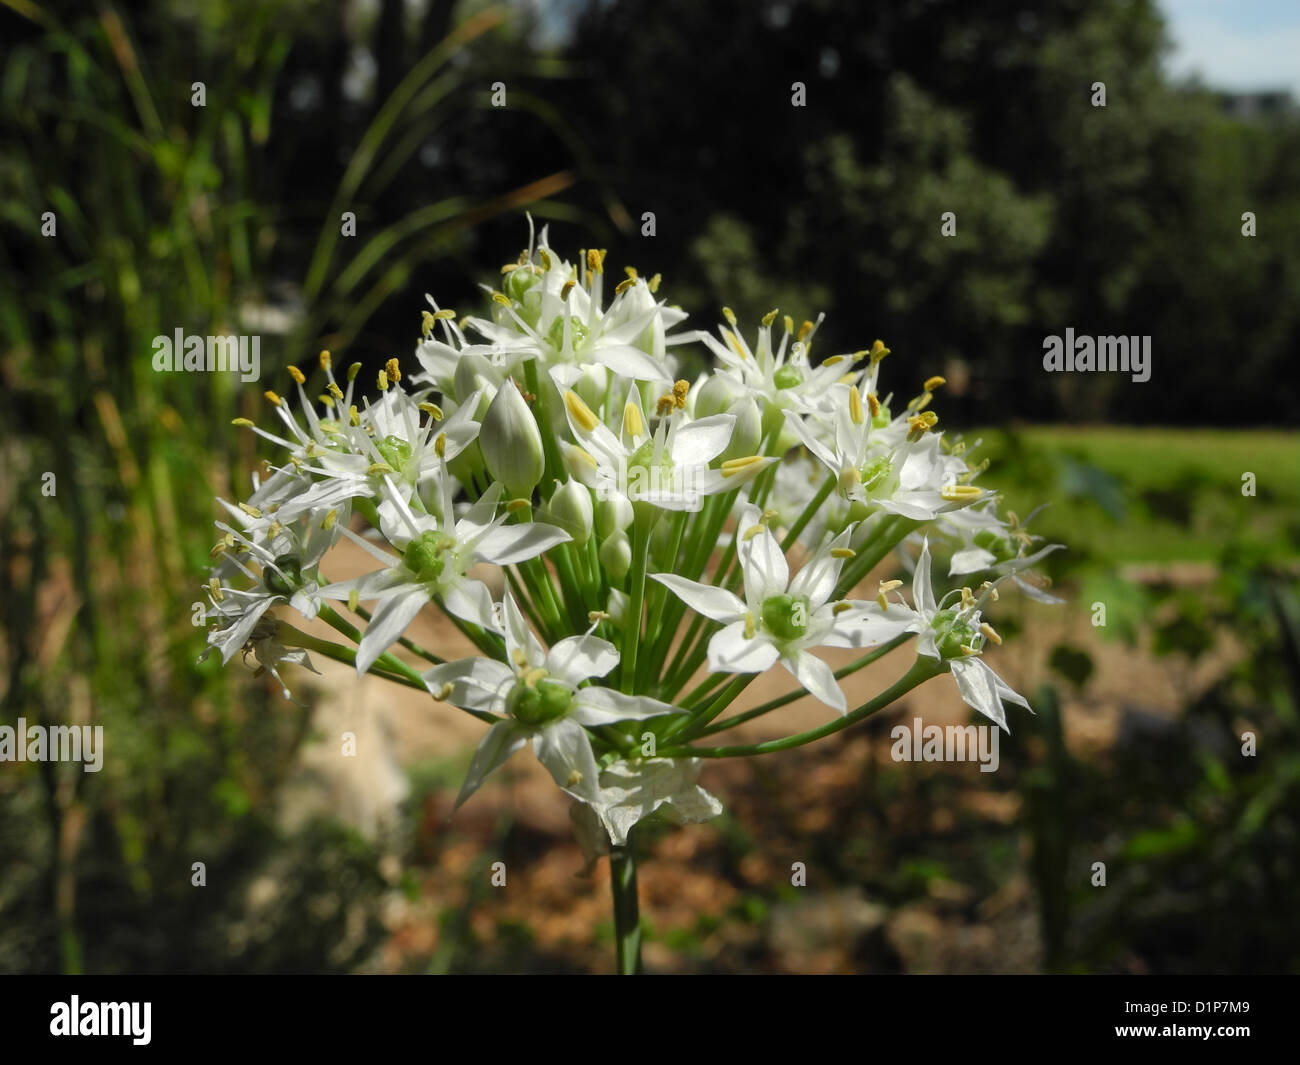 Garlic, Allium trifoliatum Photographed in Israel Stock Photo